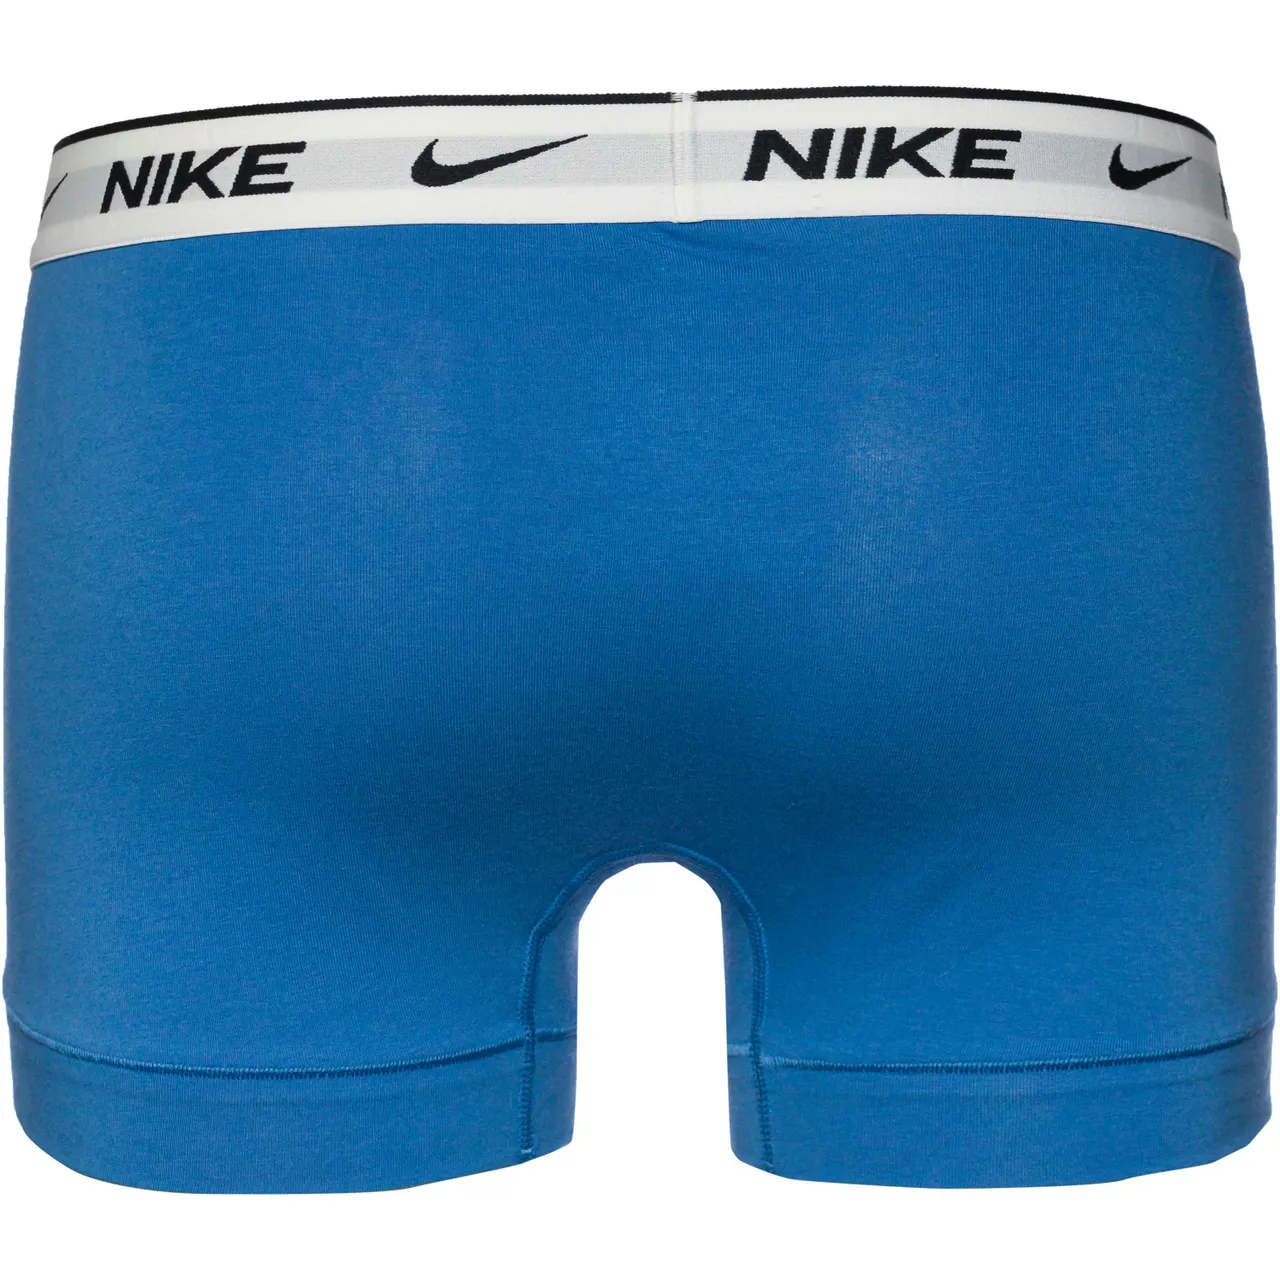 Nike EVERYDAY COTTON STRETCH Unterhose Herren